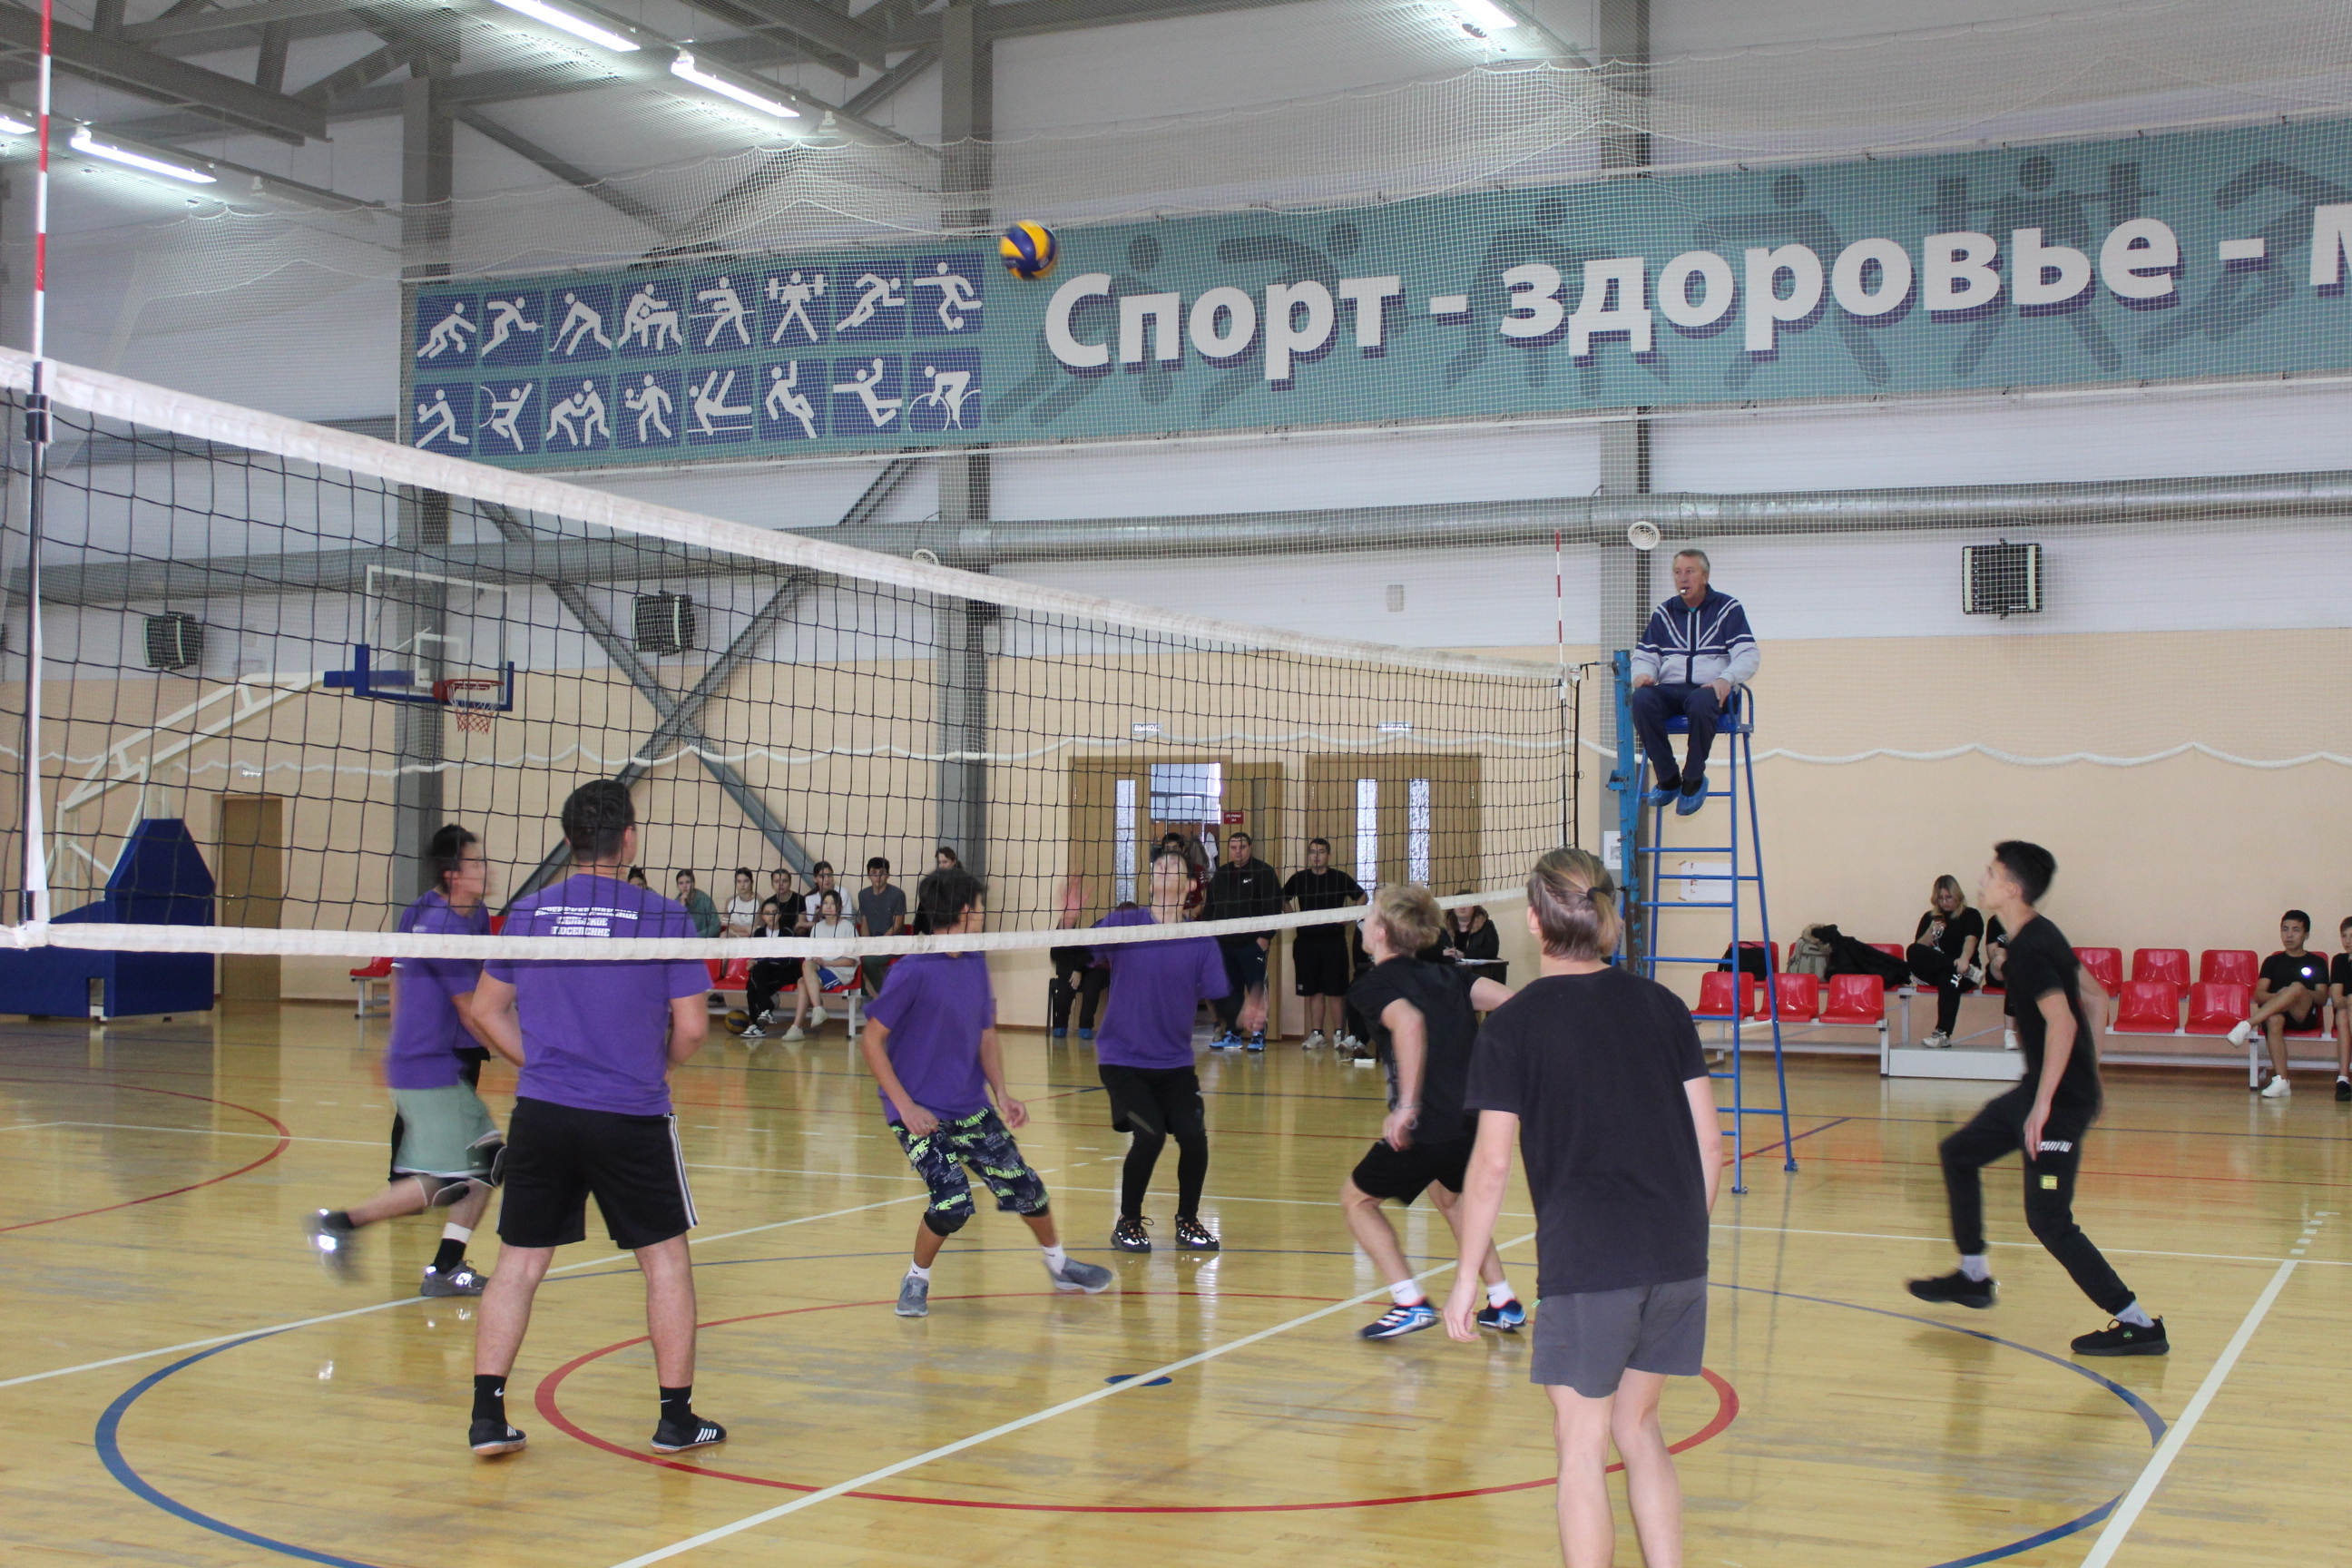 Завершились финальные соревнования по волейболу среди учащейся молодежи района..